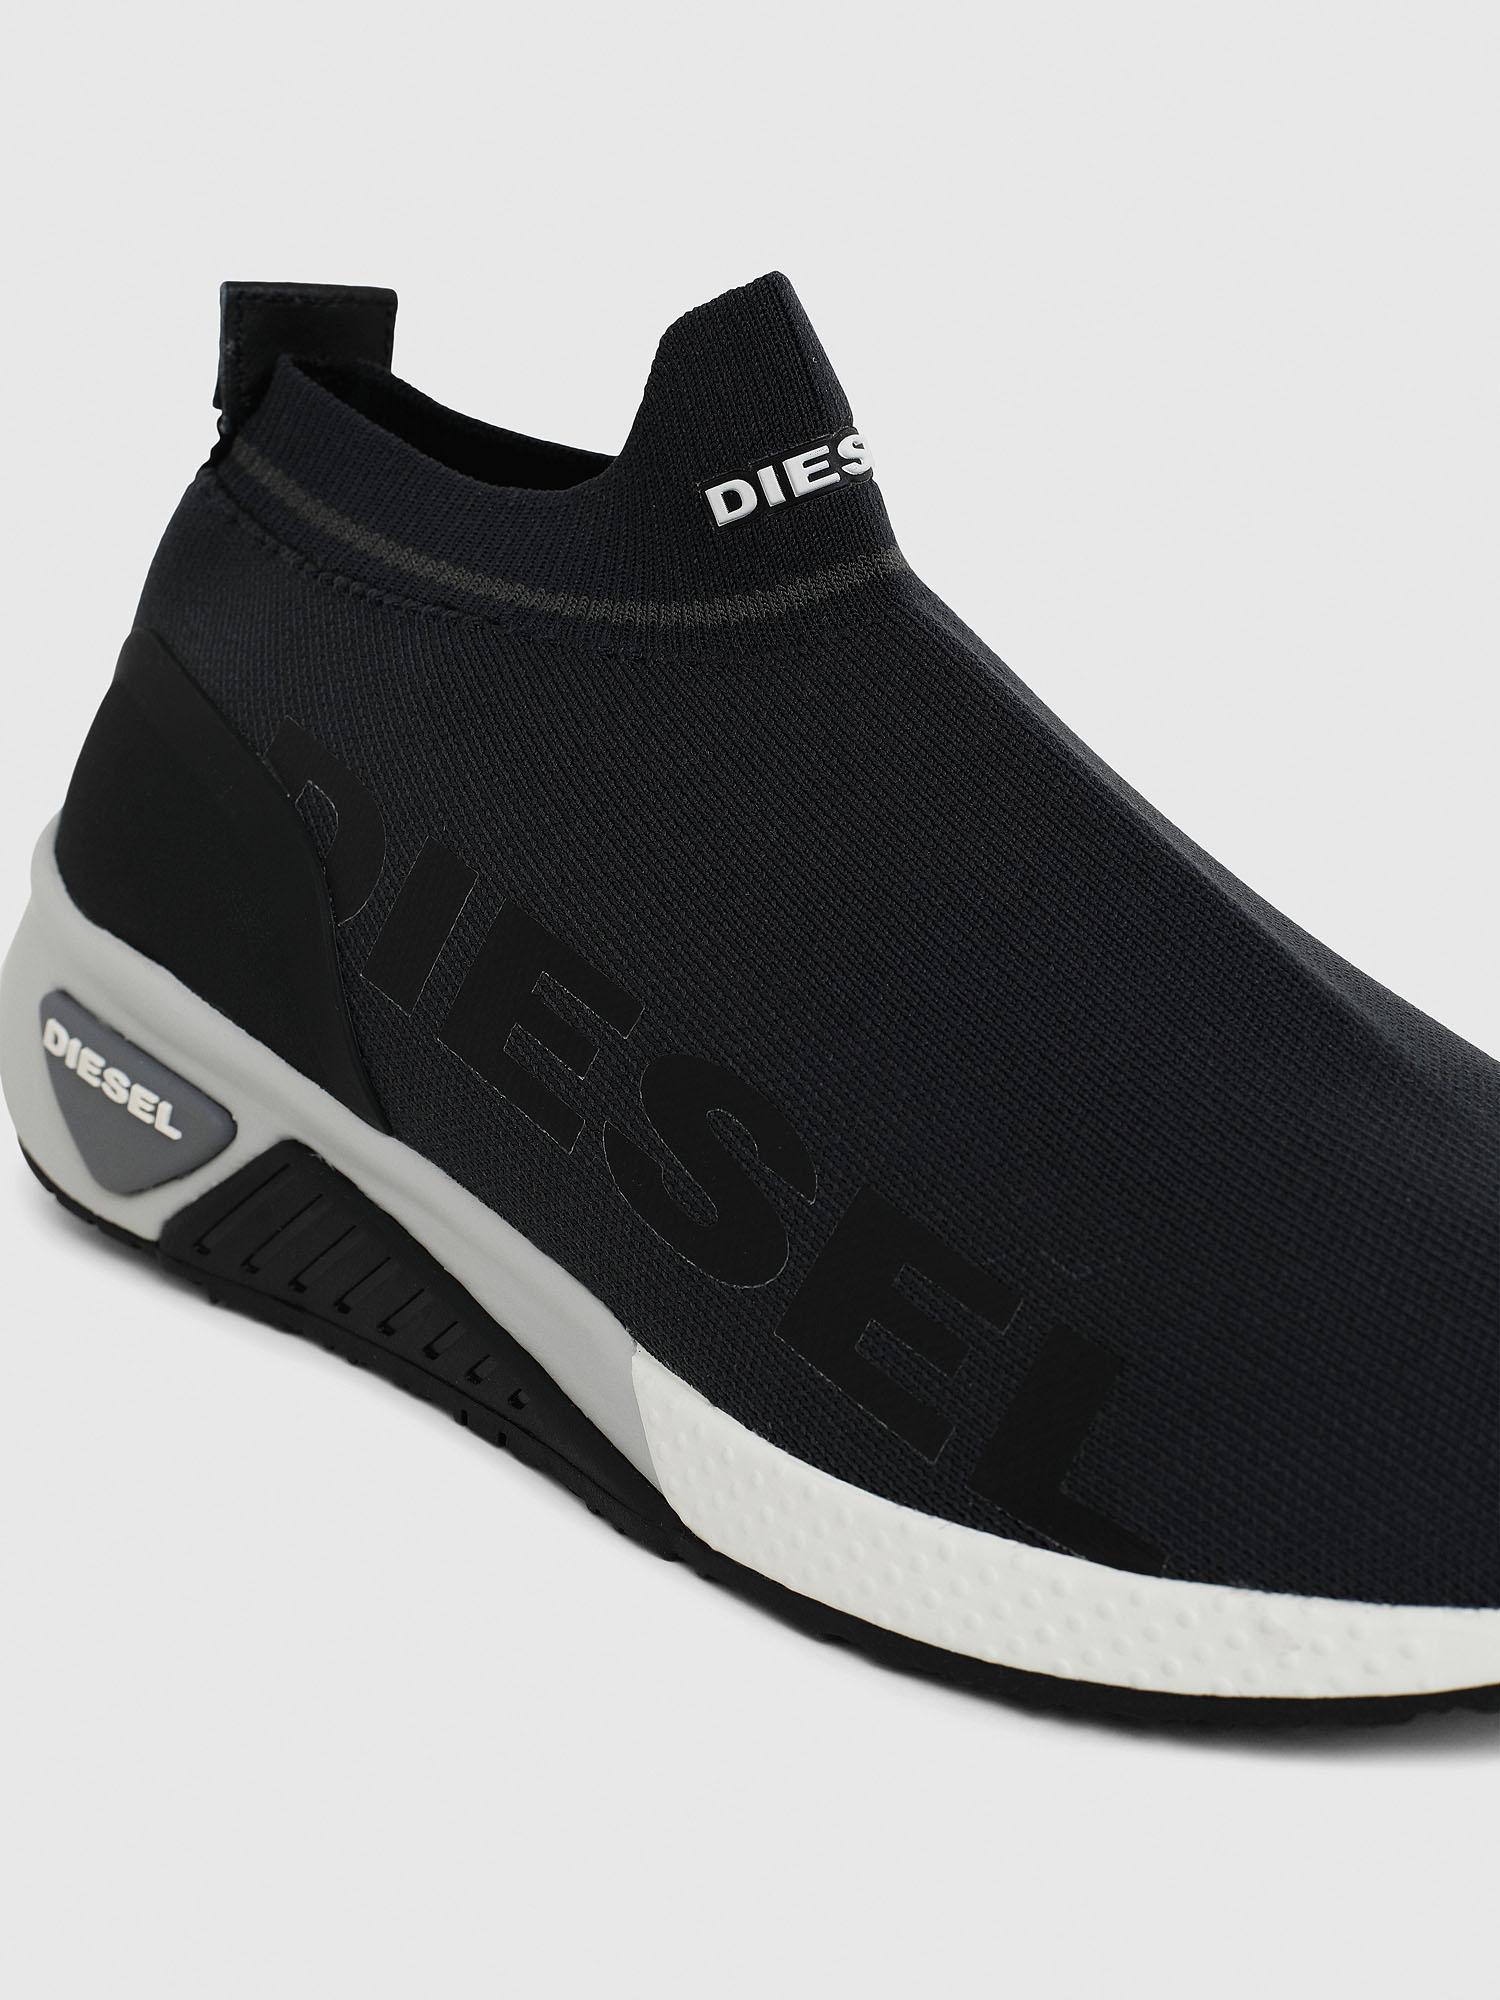 slip on diesel shoes